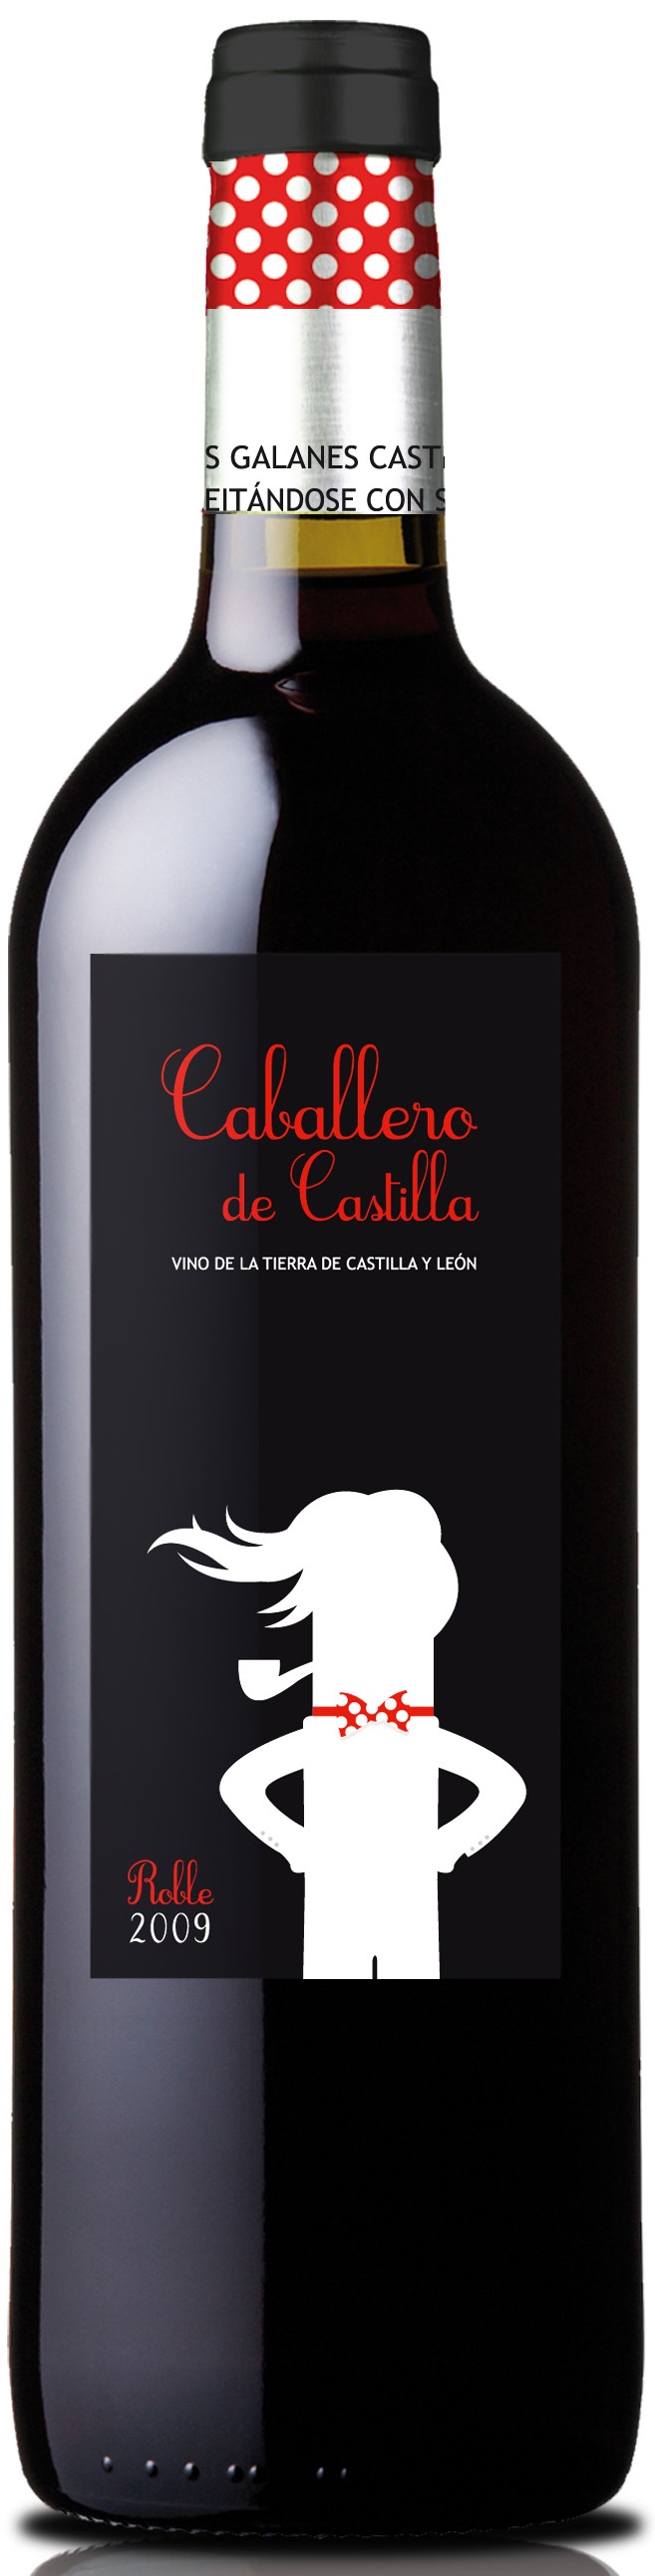 Imagen de la botella de Vino Caballero de Castilla Roble